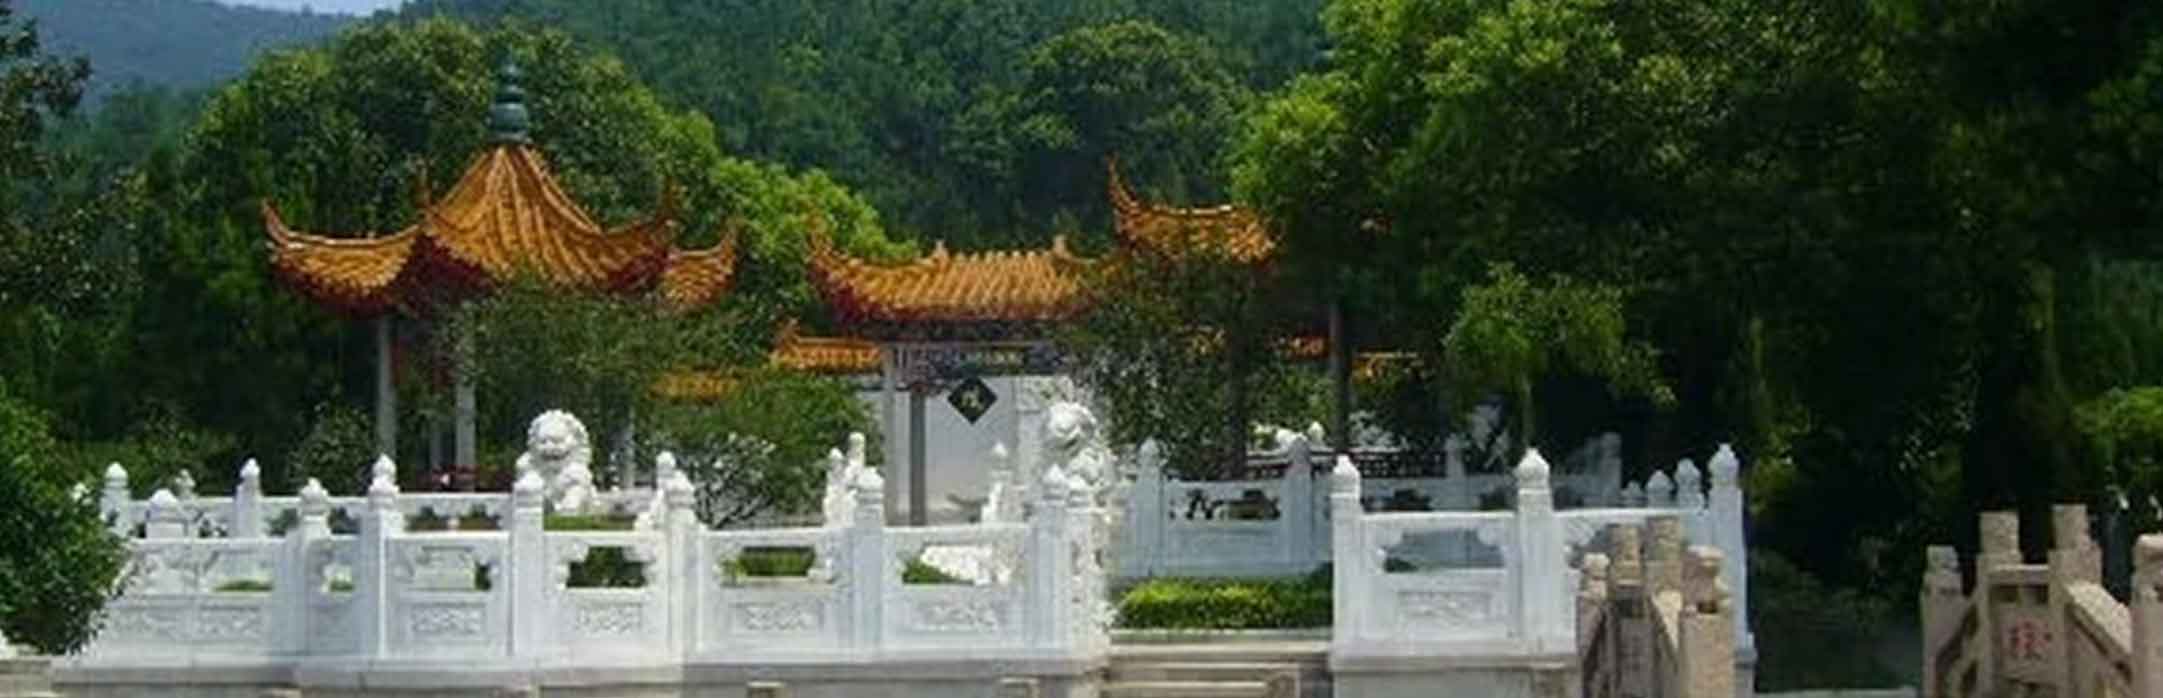 苏州市吴中区横泾公墓